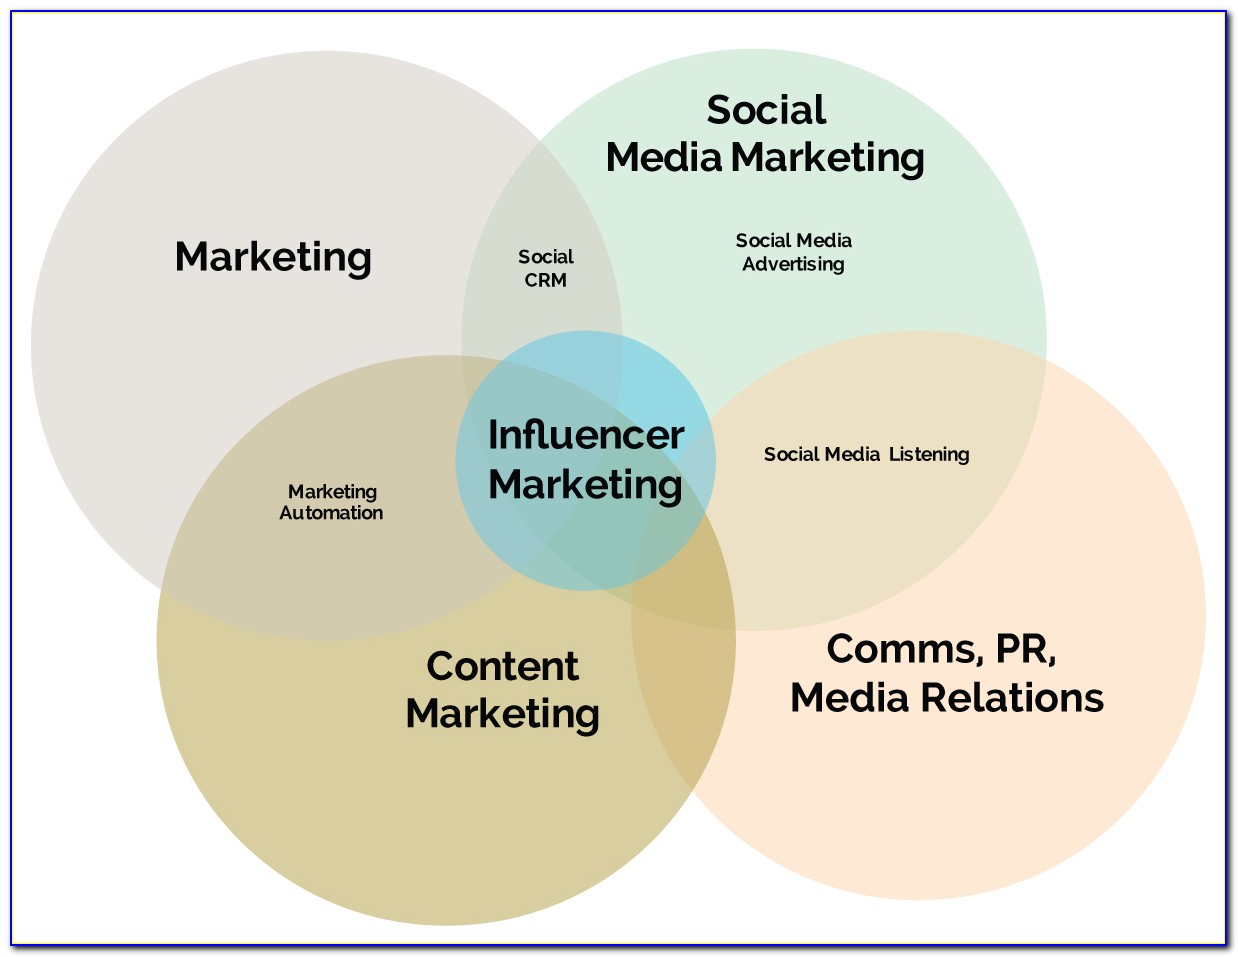 Influencer Marketing Diagram